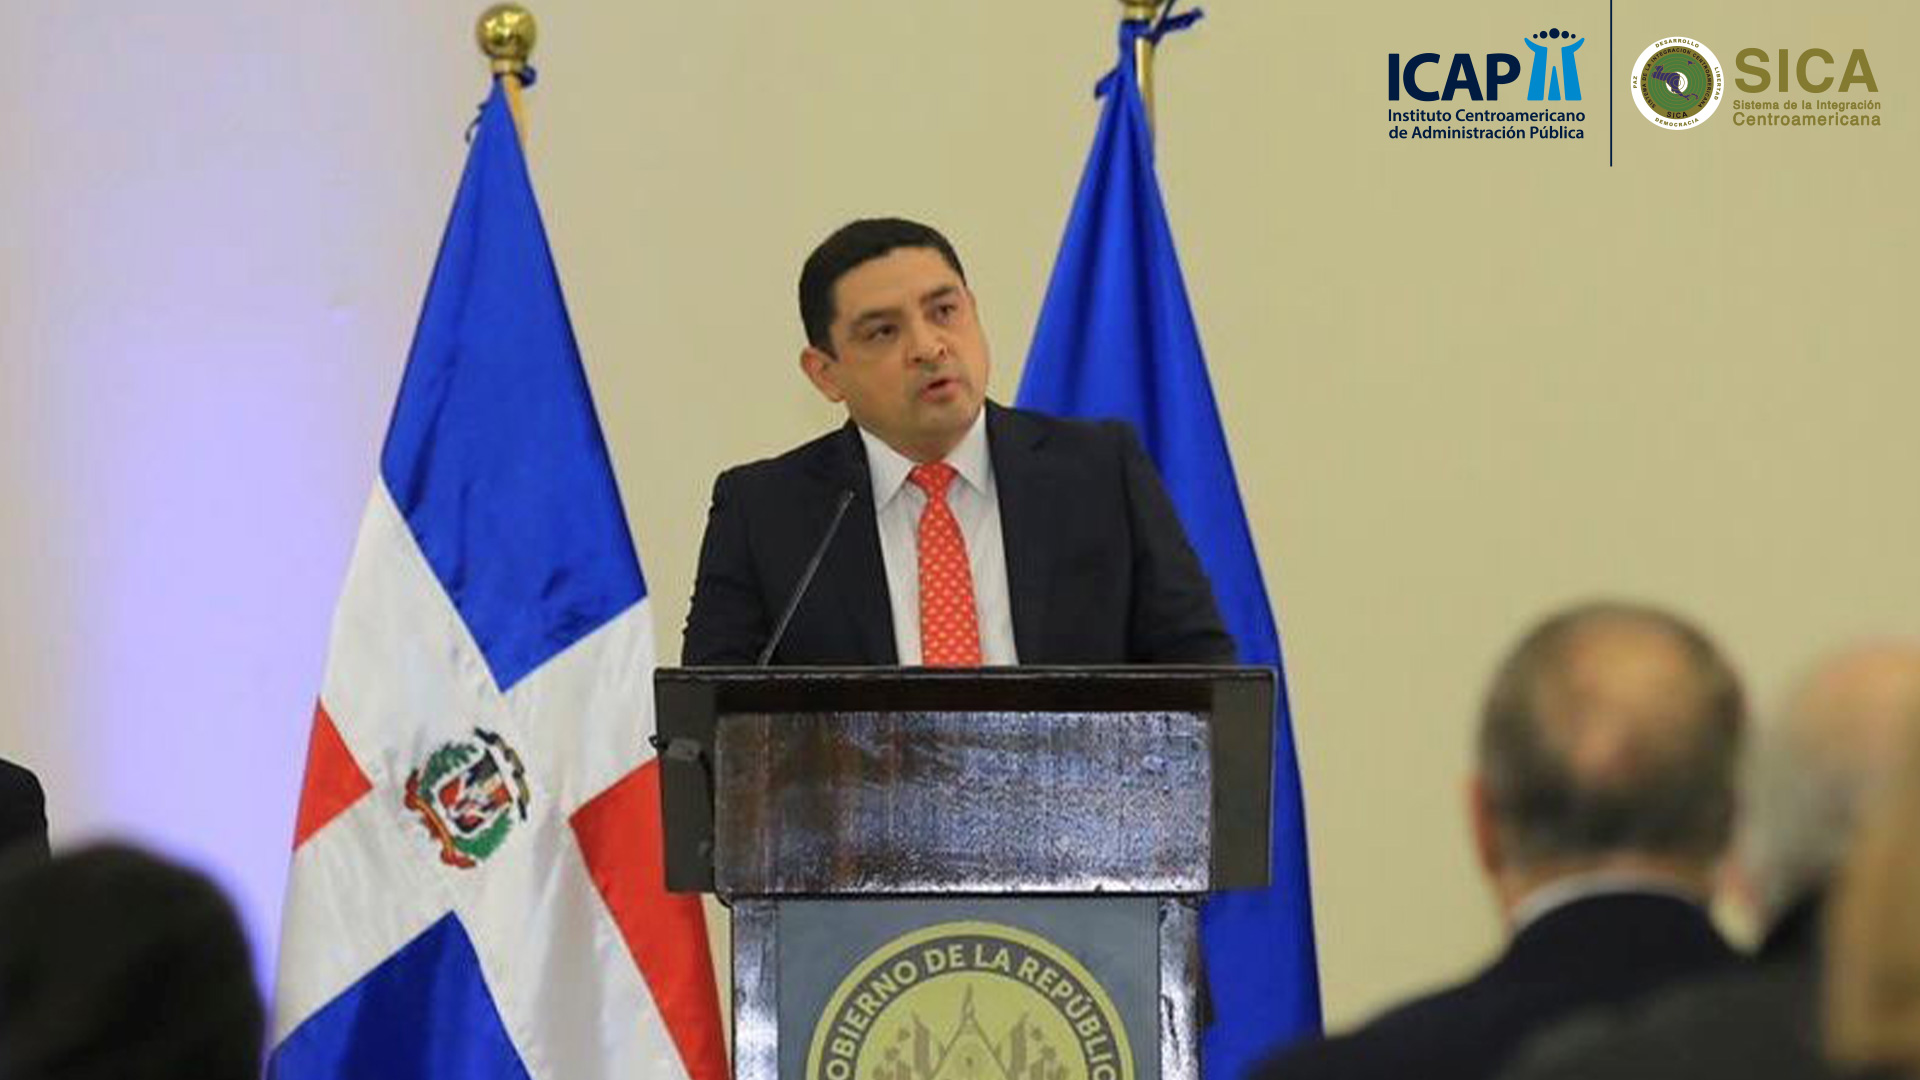 Mensaje del señor Javier Argueta Gómez Presidente de la Junta General del ICAP